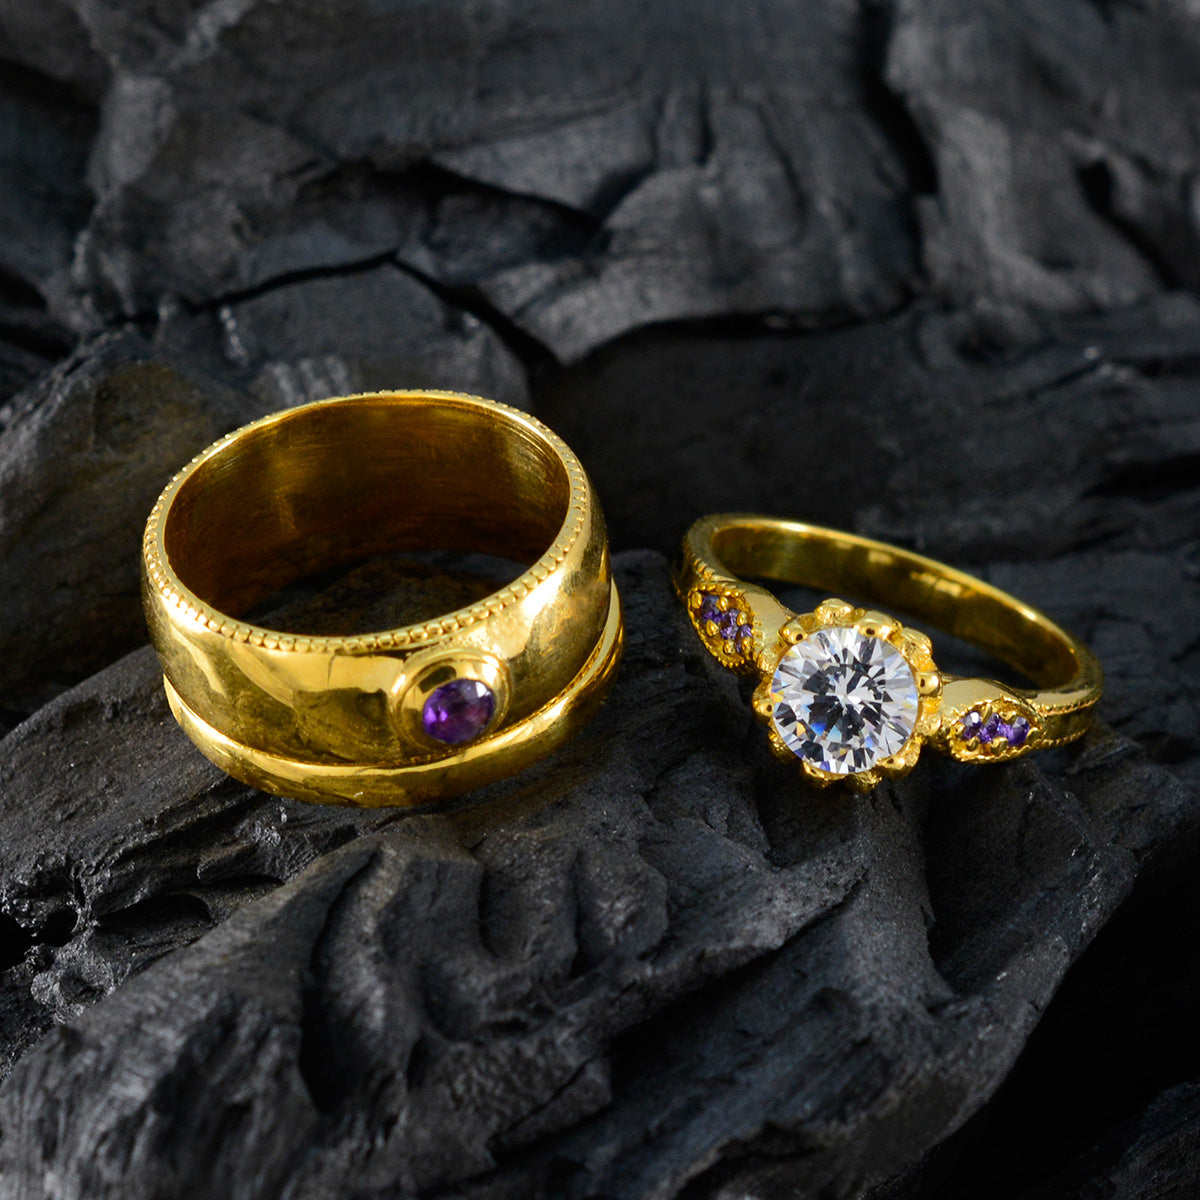 Отличное серебряное кольцо riyo с покрытием из желтого золота, аметист, круглая форма, установка зубца, ювелирное изделие на заказ, юбилейное кольцо